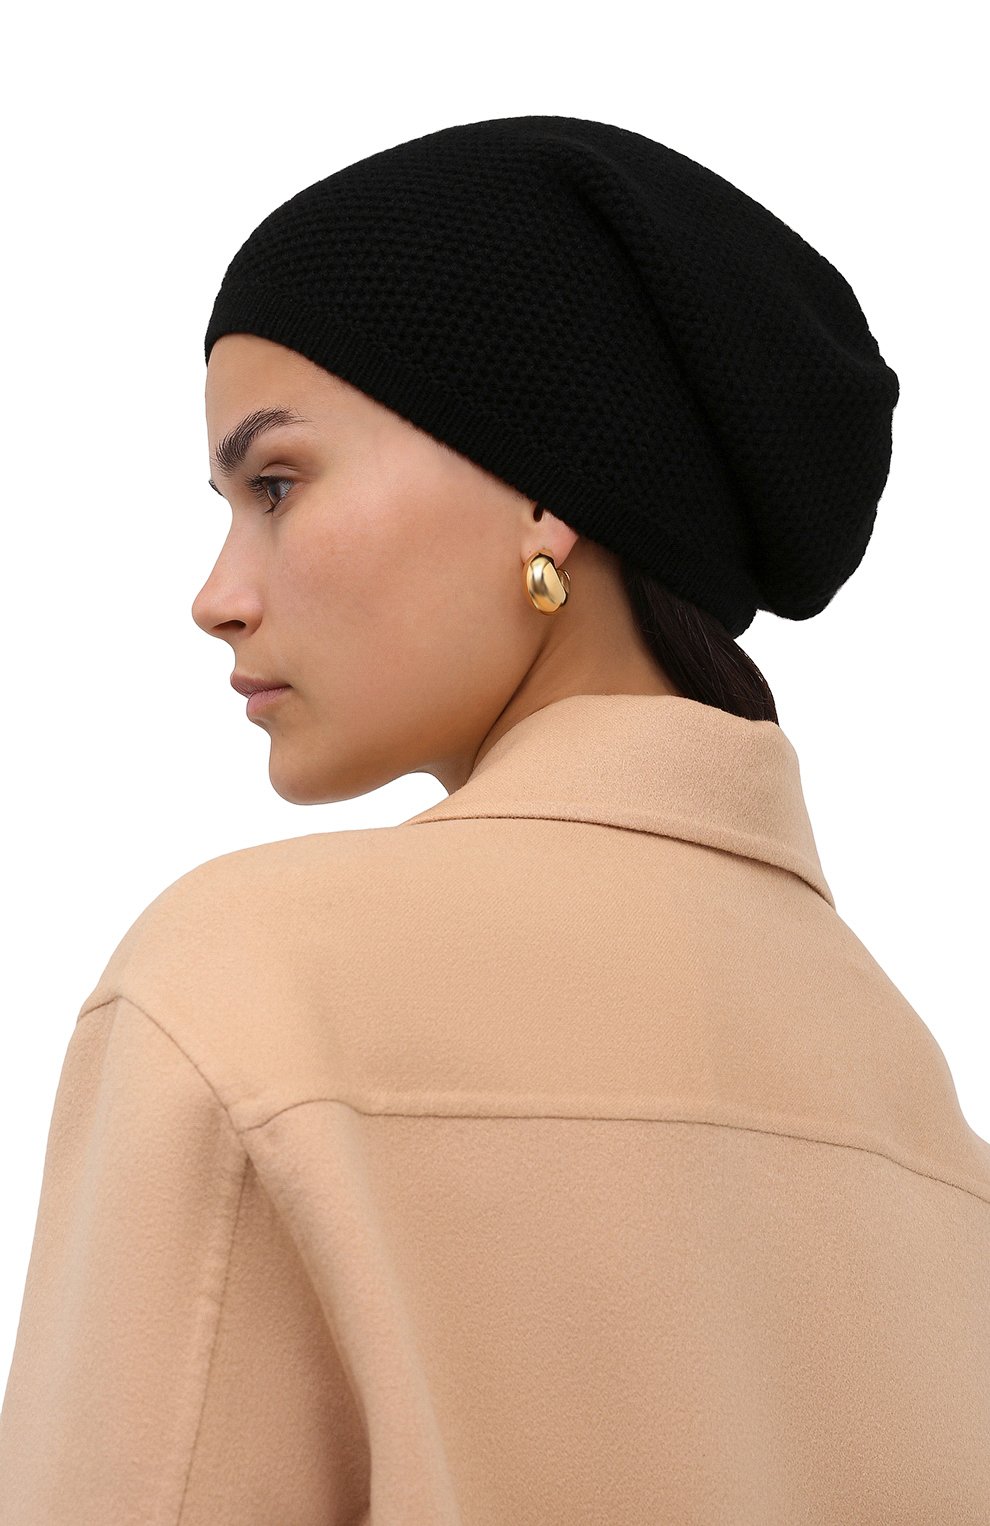 Женская кашемировая шапка INVERNI черного цвета, арт. 5263 CM | Фото 2 (Материал: Текстиль, Кашемир, Шерсть)